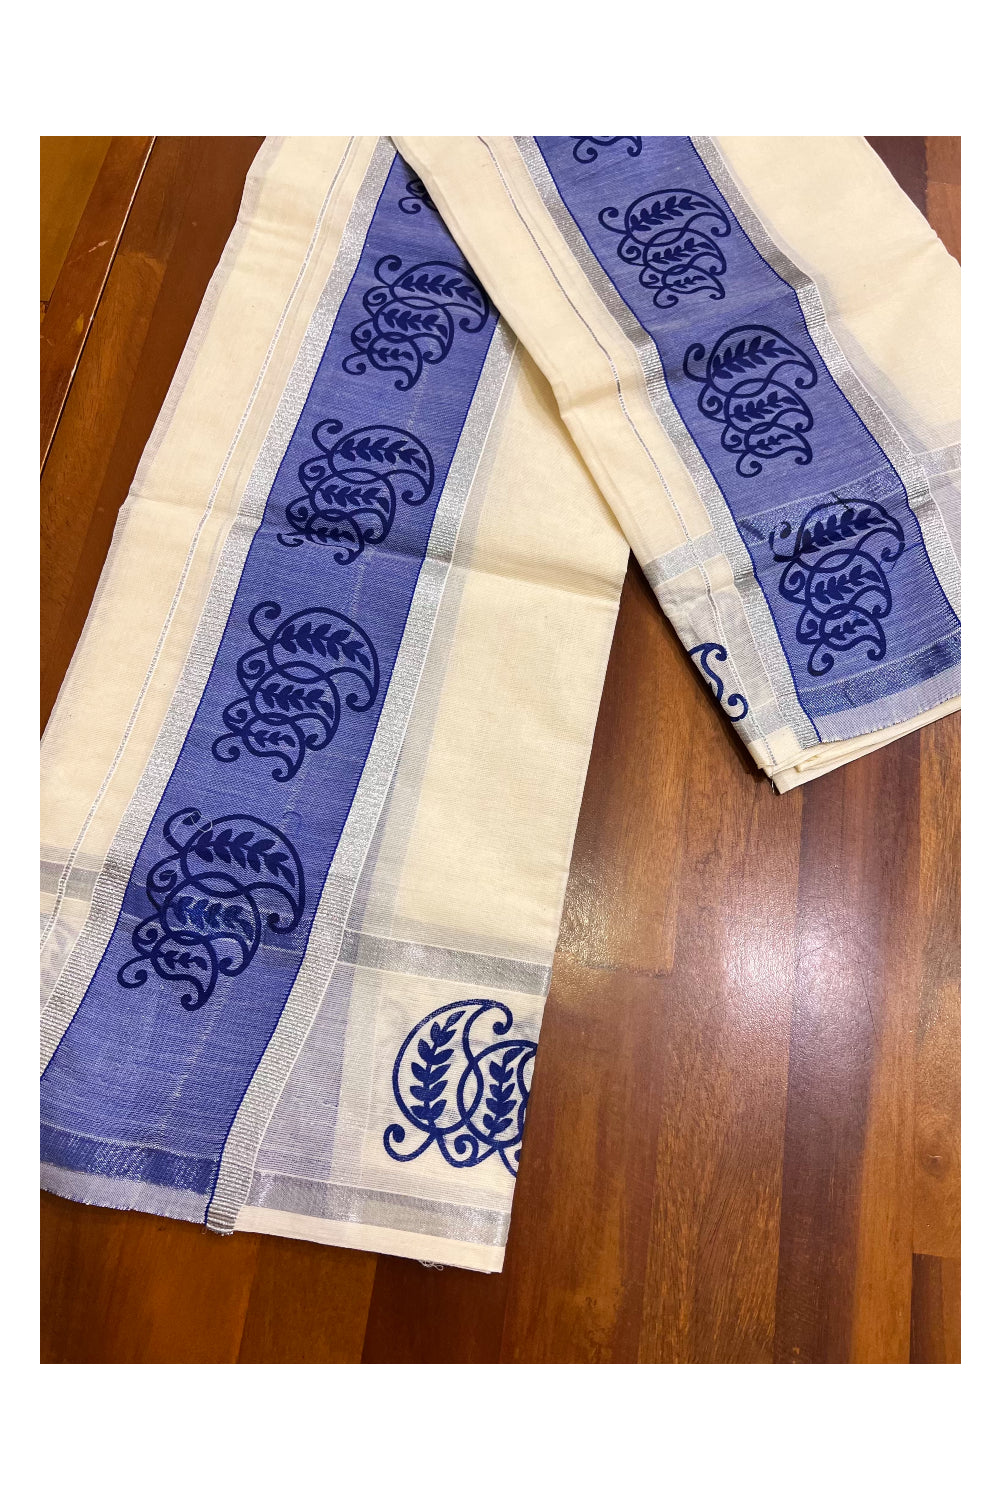 Kerala Cotton Set Mundu Single (Mundum Neriyathum) with Block Prints on Silver Kasavu and Blue Border